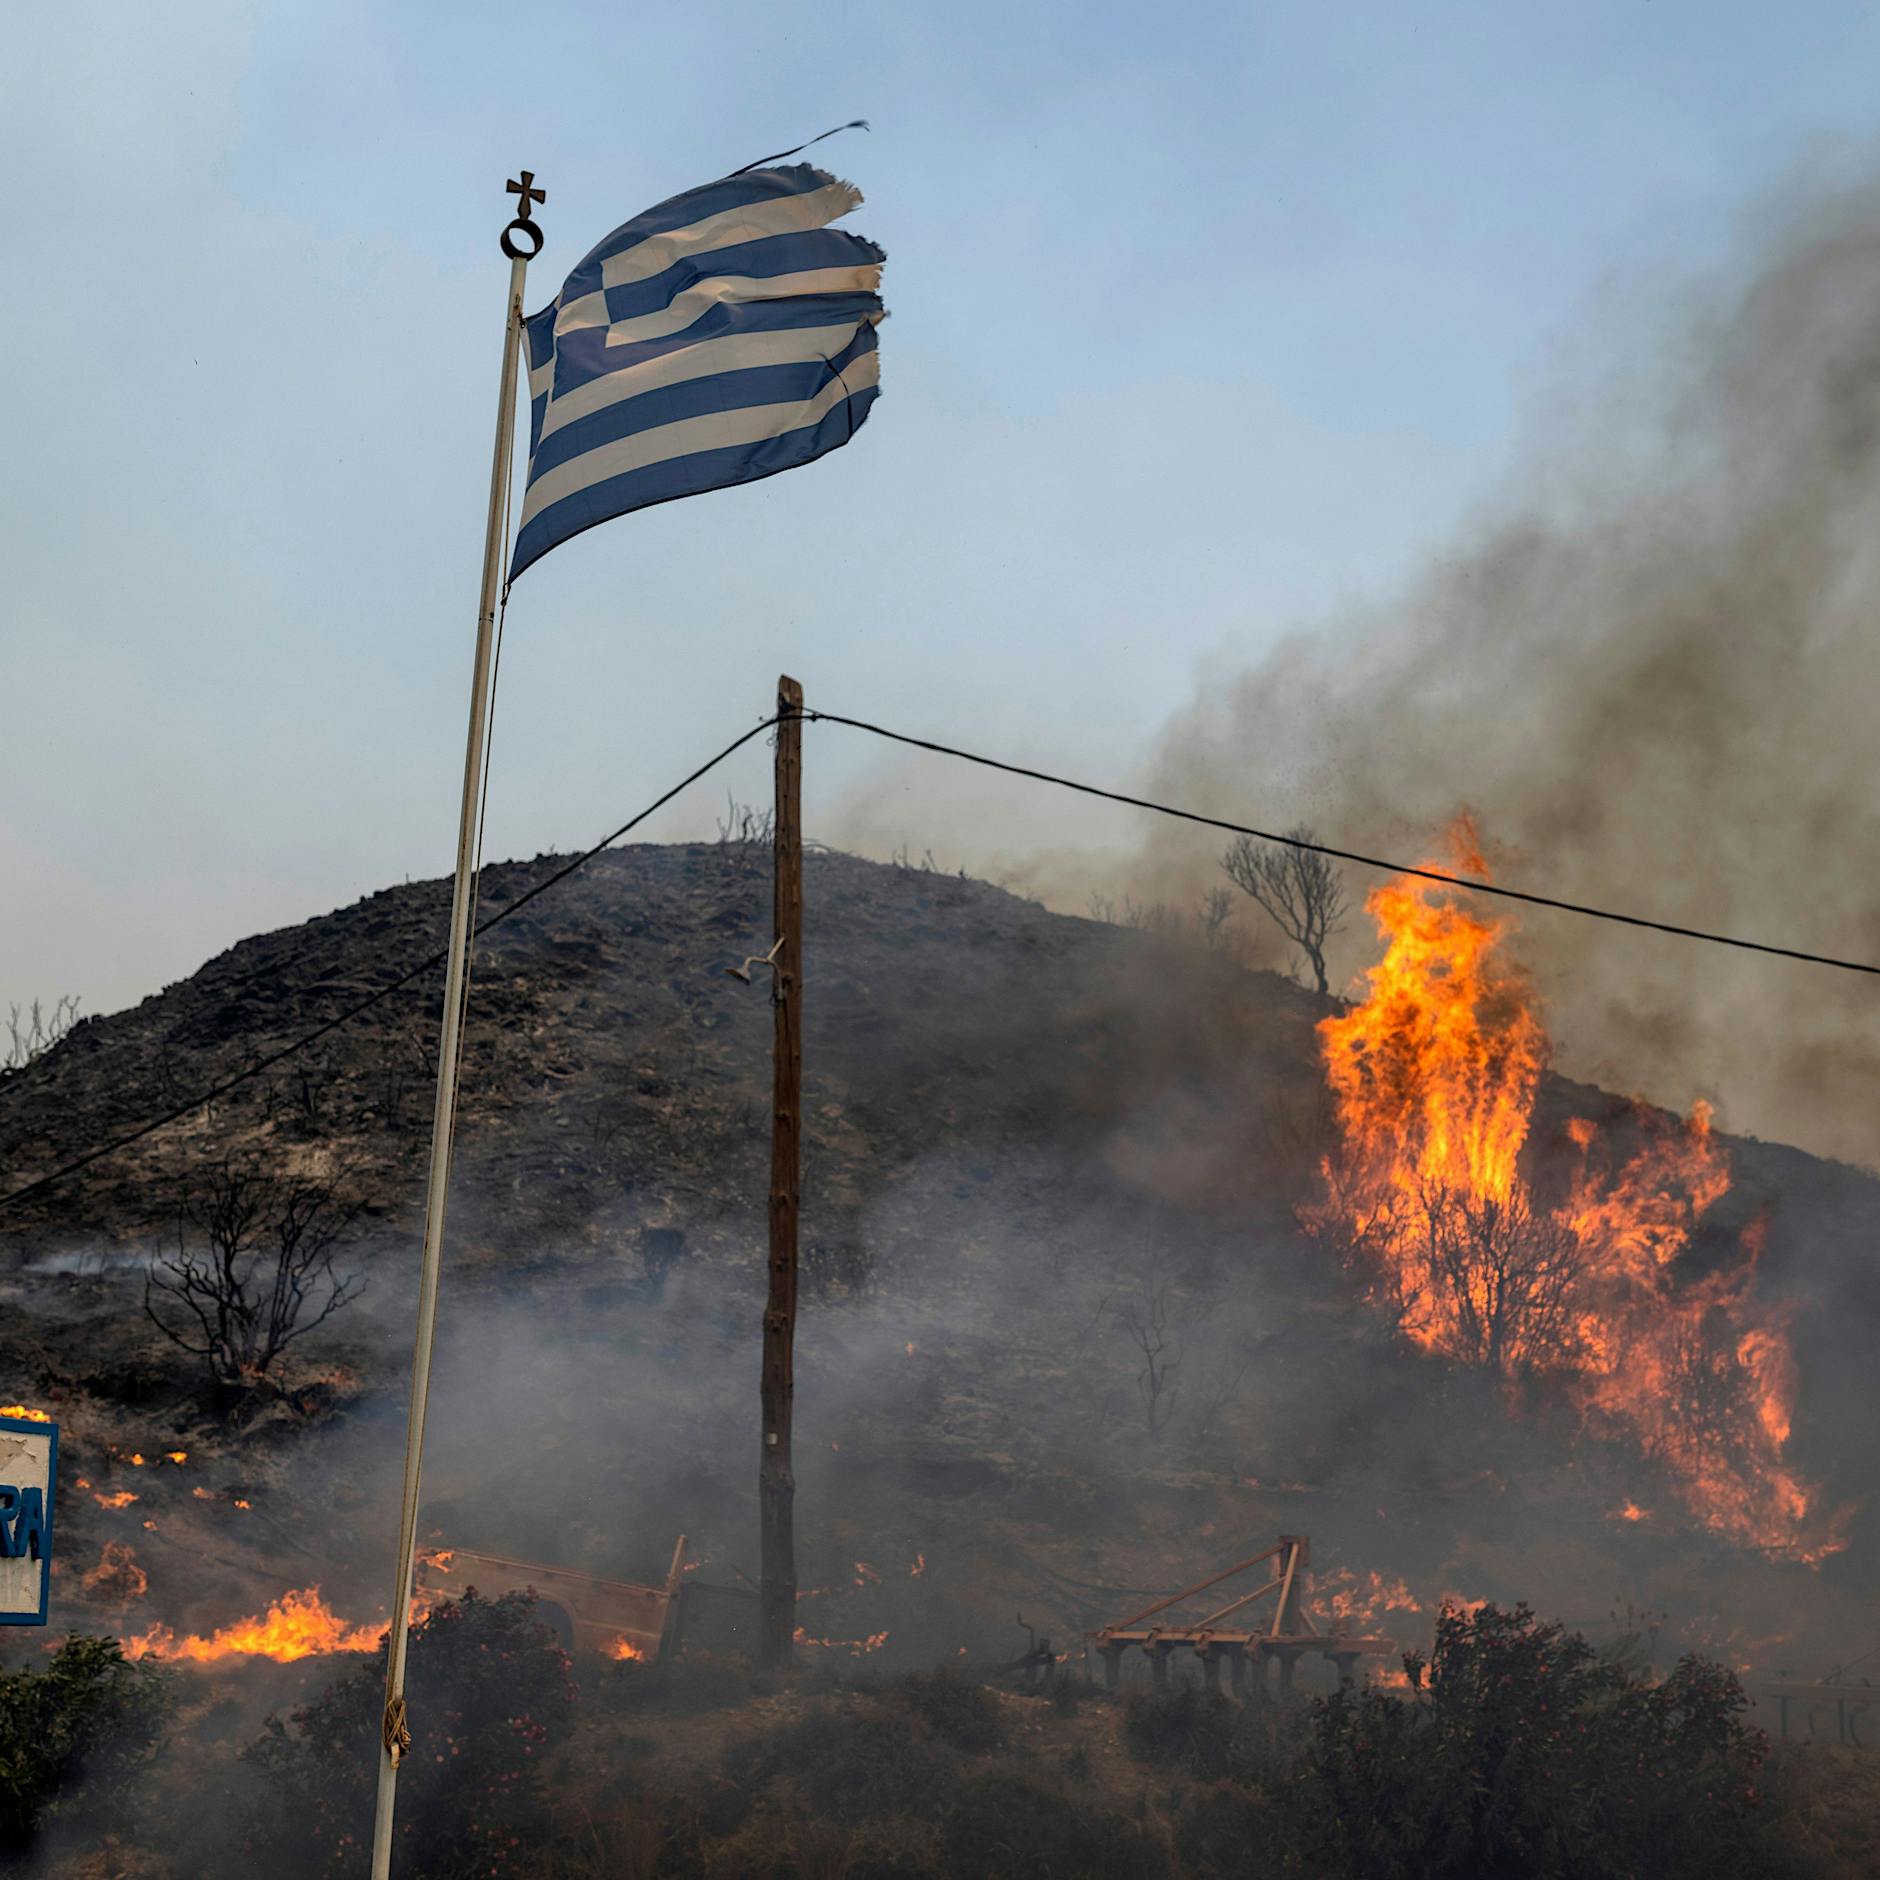 Urlaub in Griechenland: So sollen Touristen vor Waldbränden geschützt werden